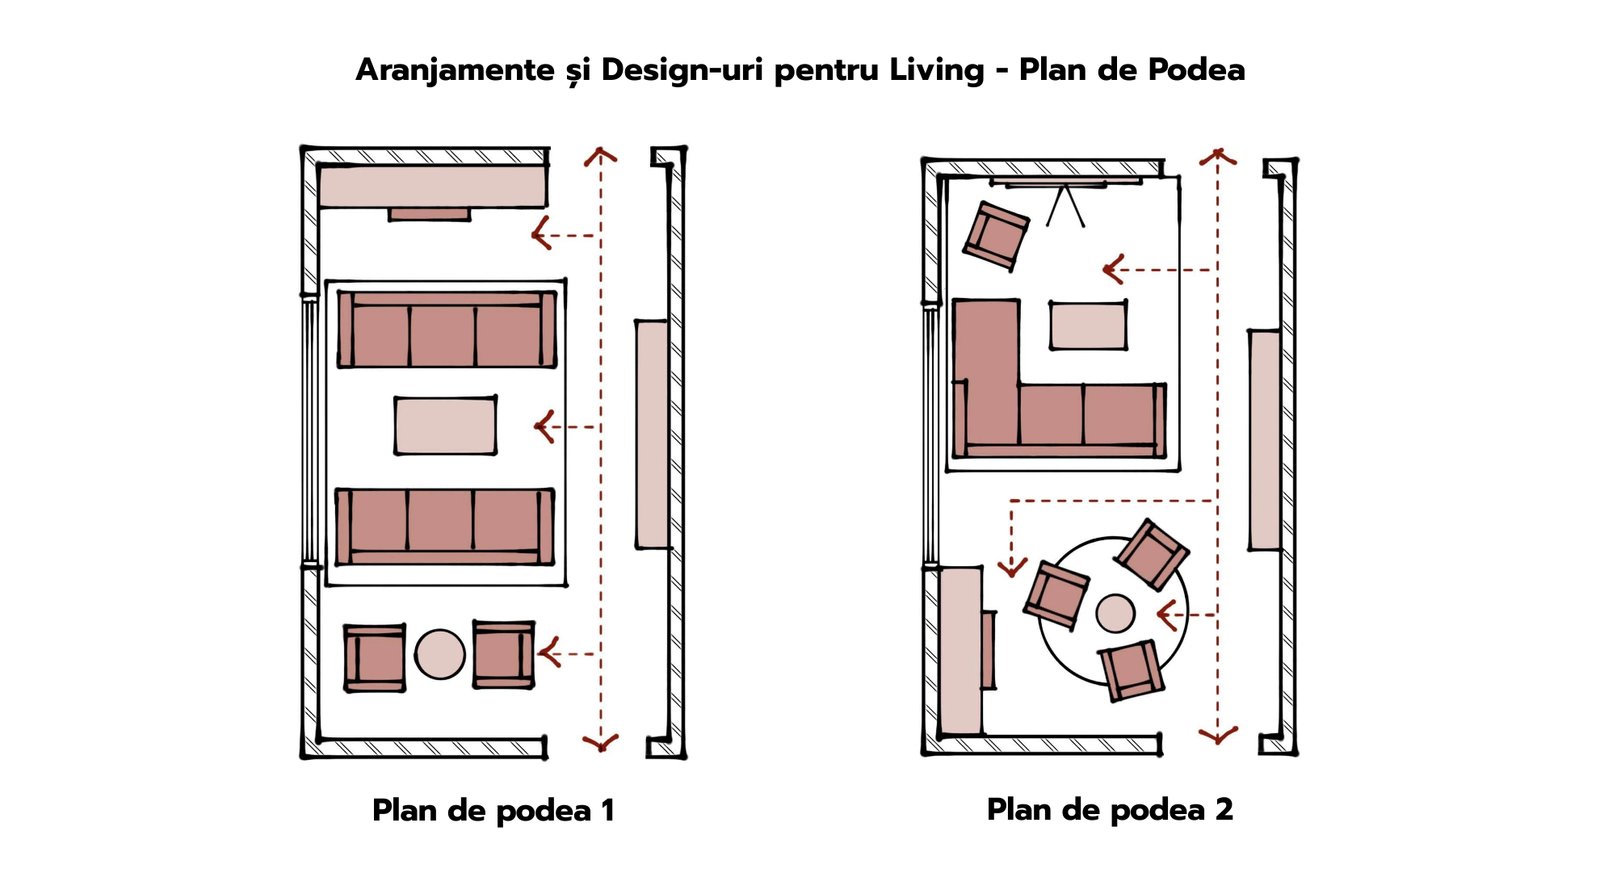 Aranjamente și Design-uri pentru Living - Plan de Podea